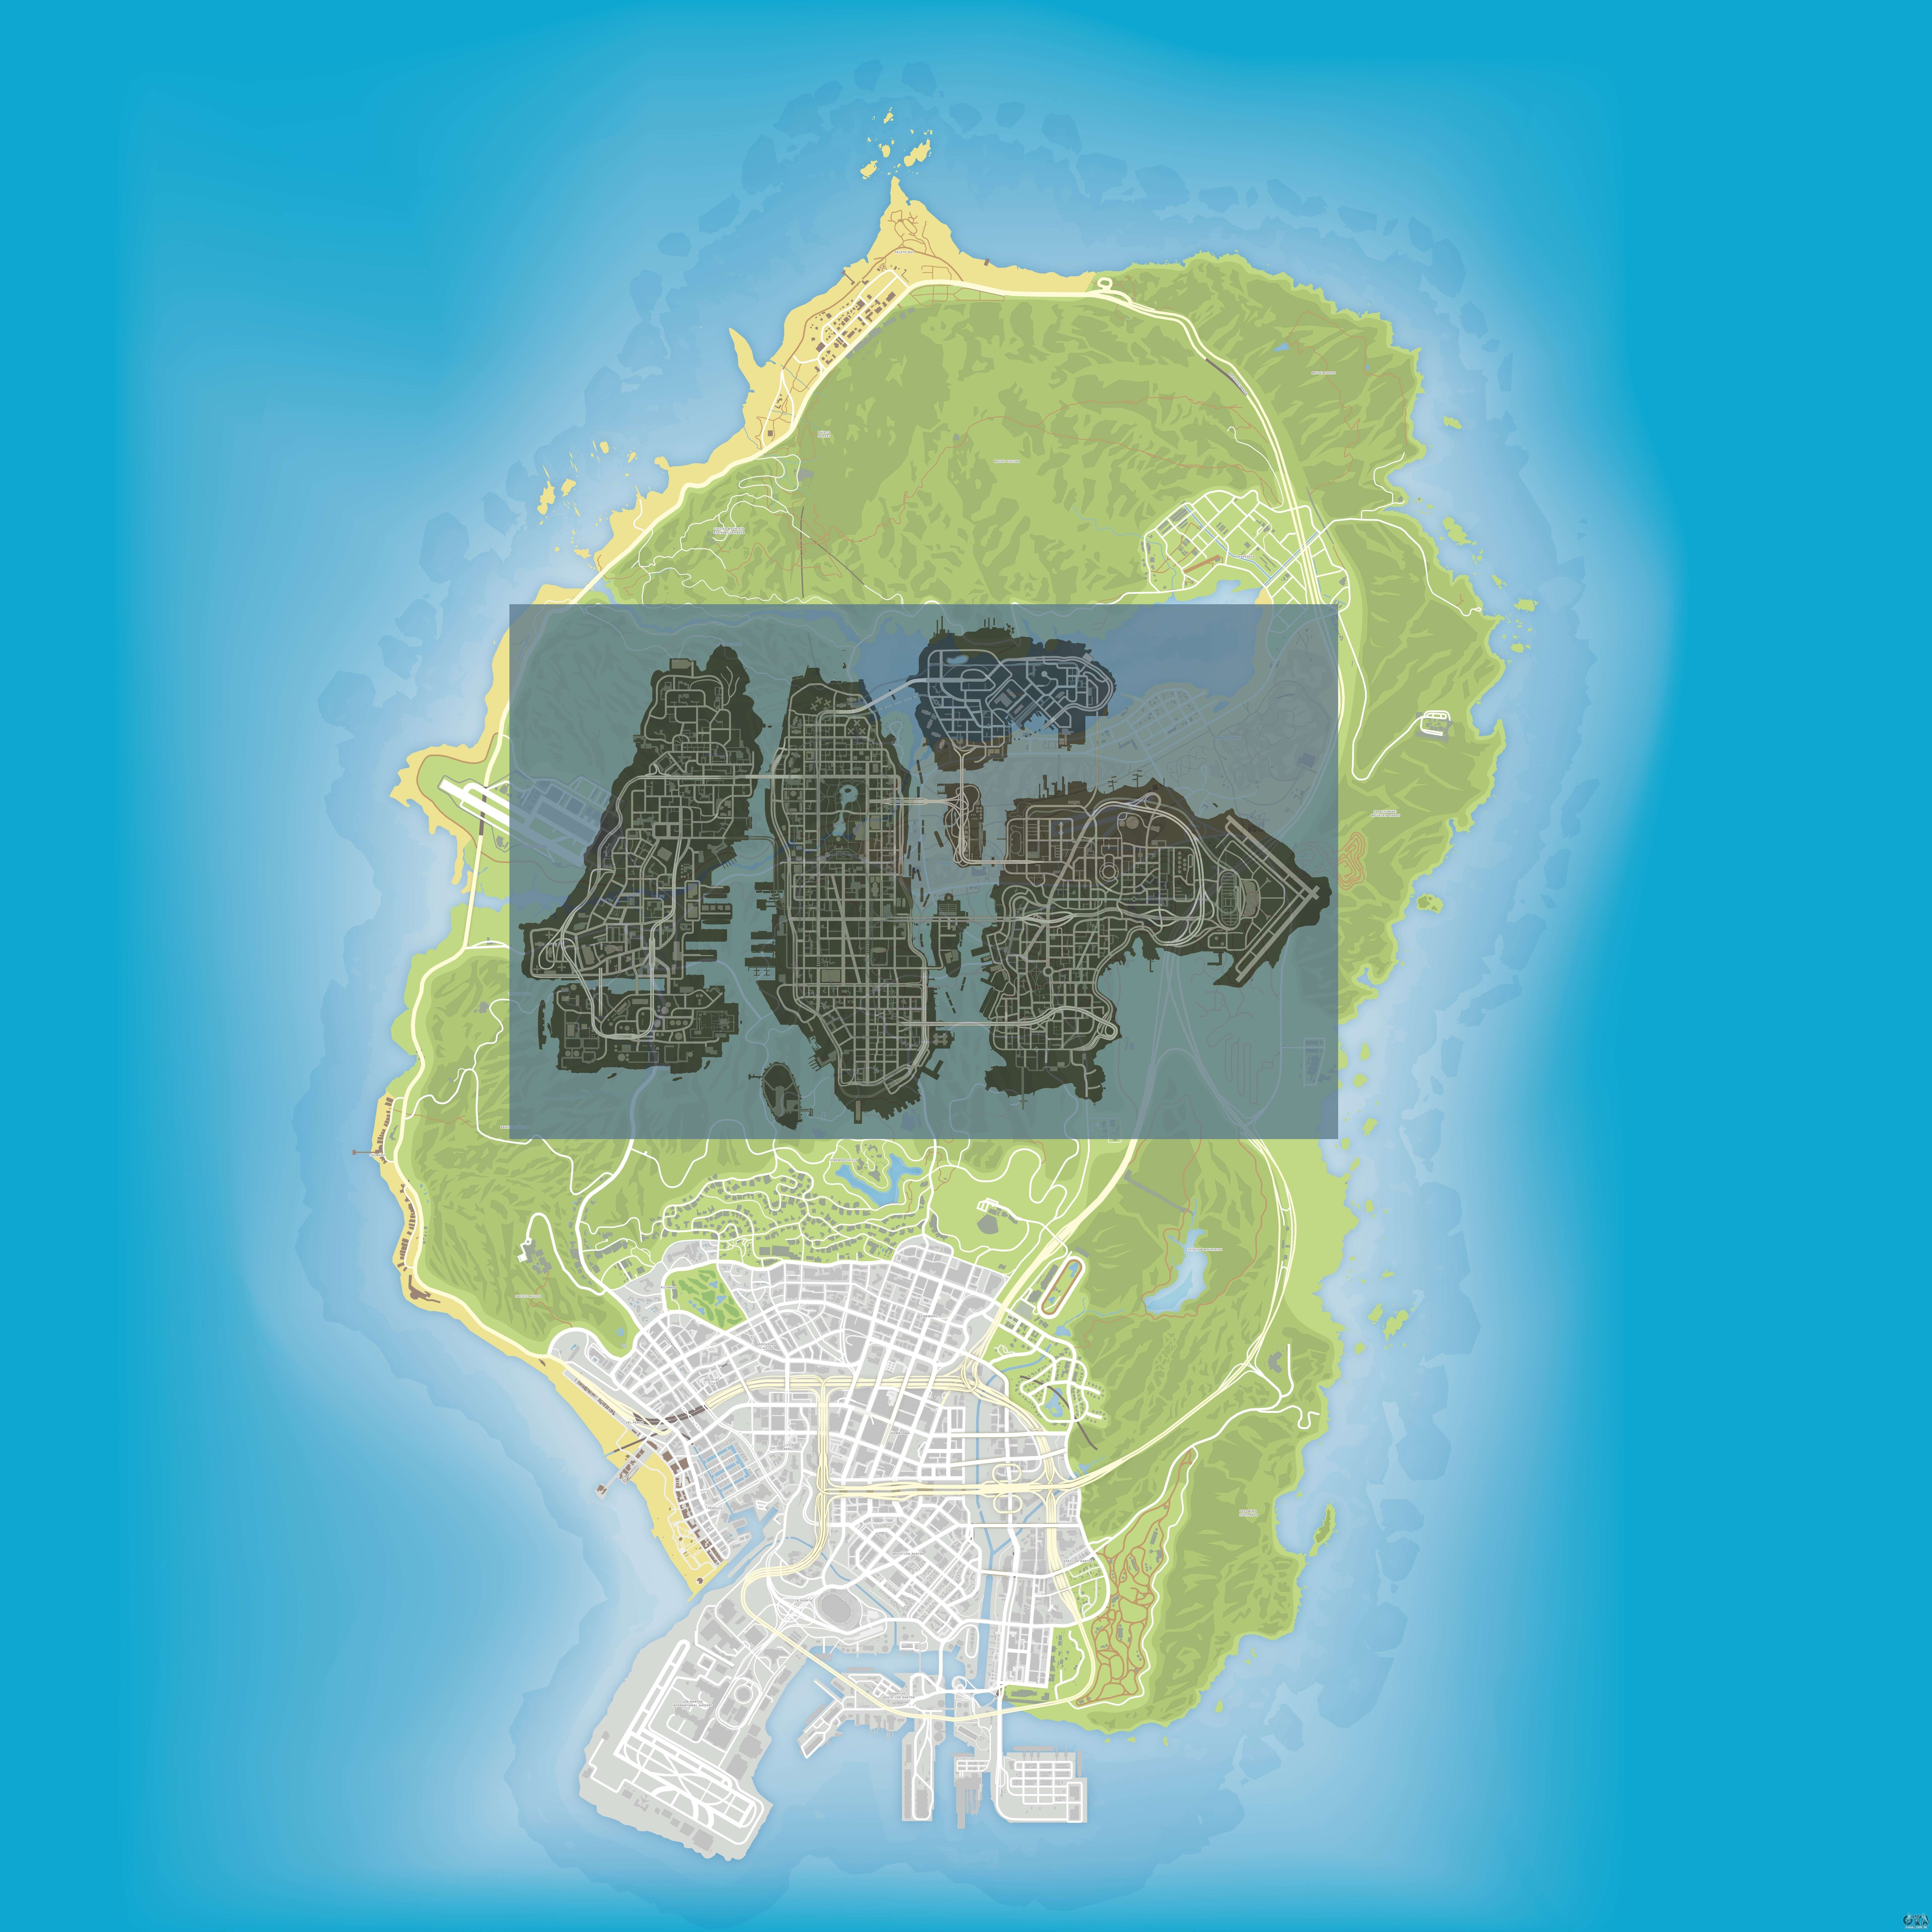 GTA 5 mapa com todas as anotações